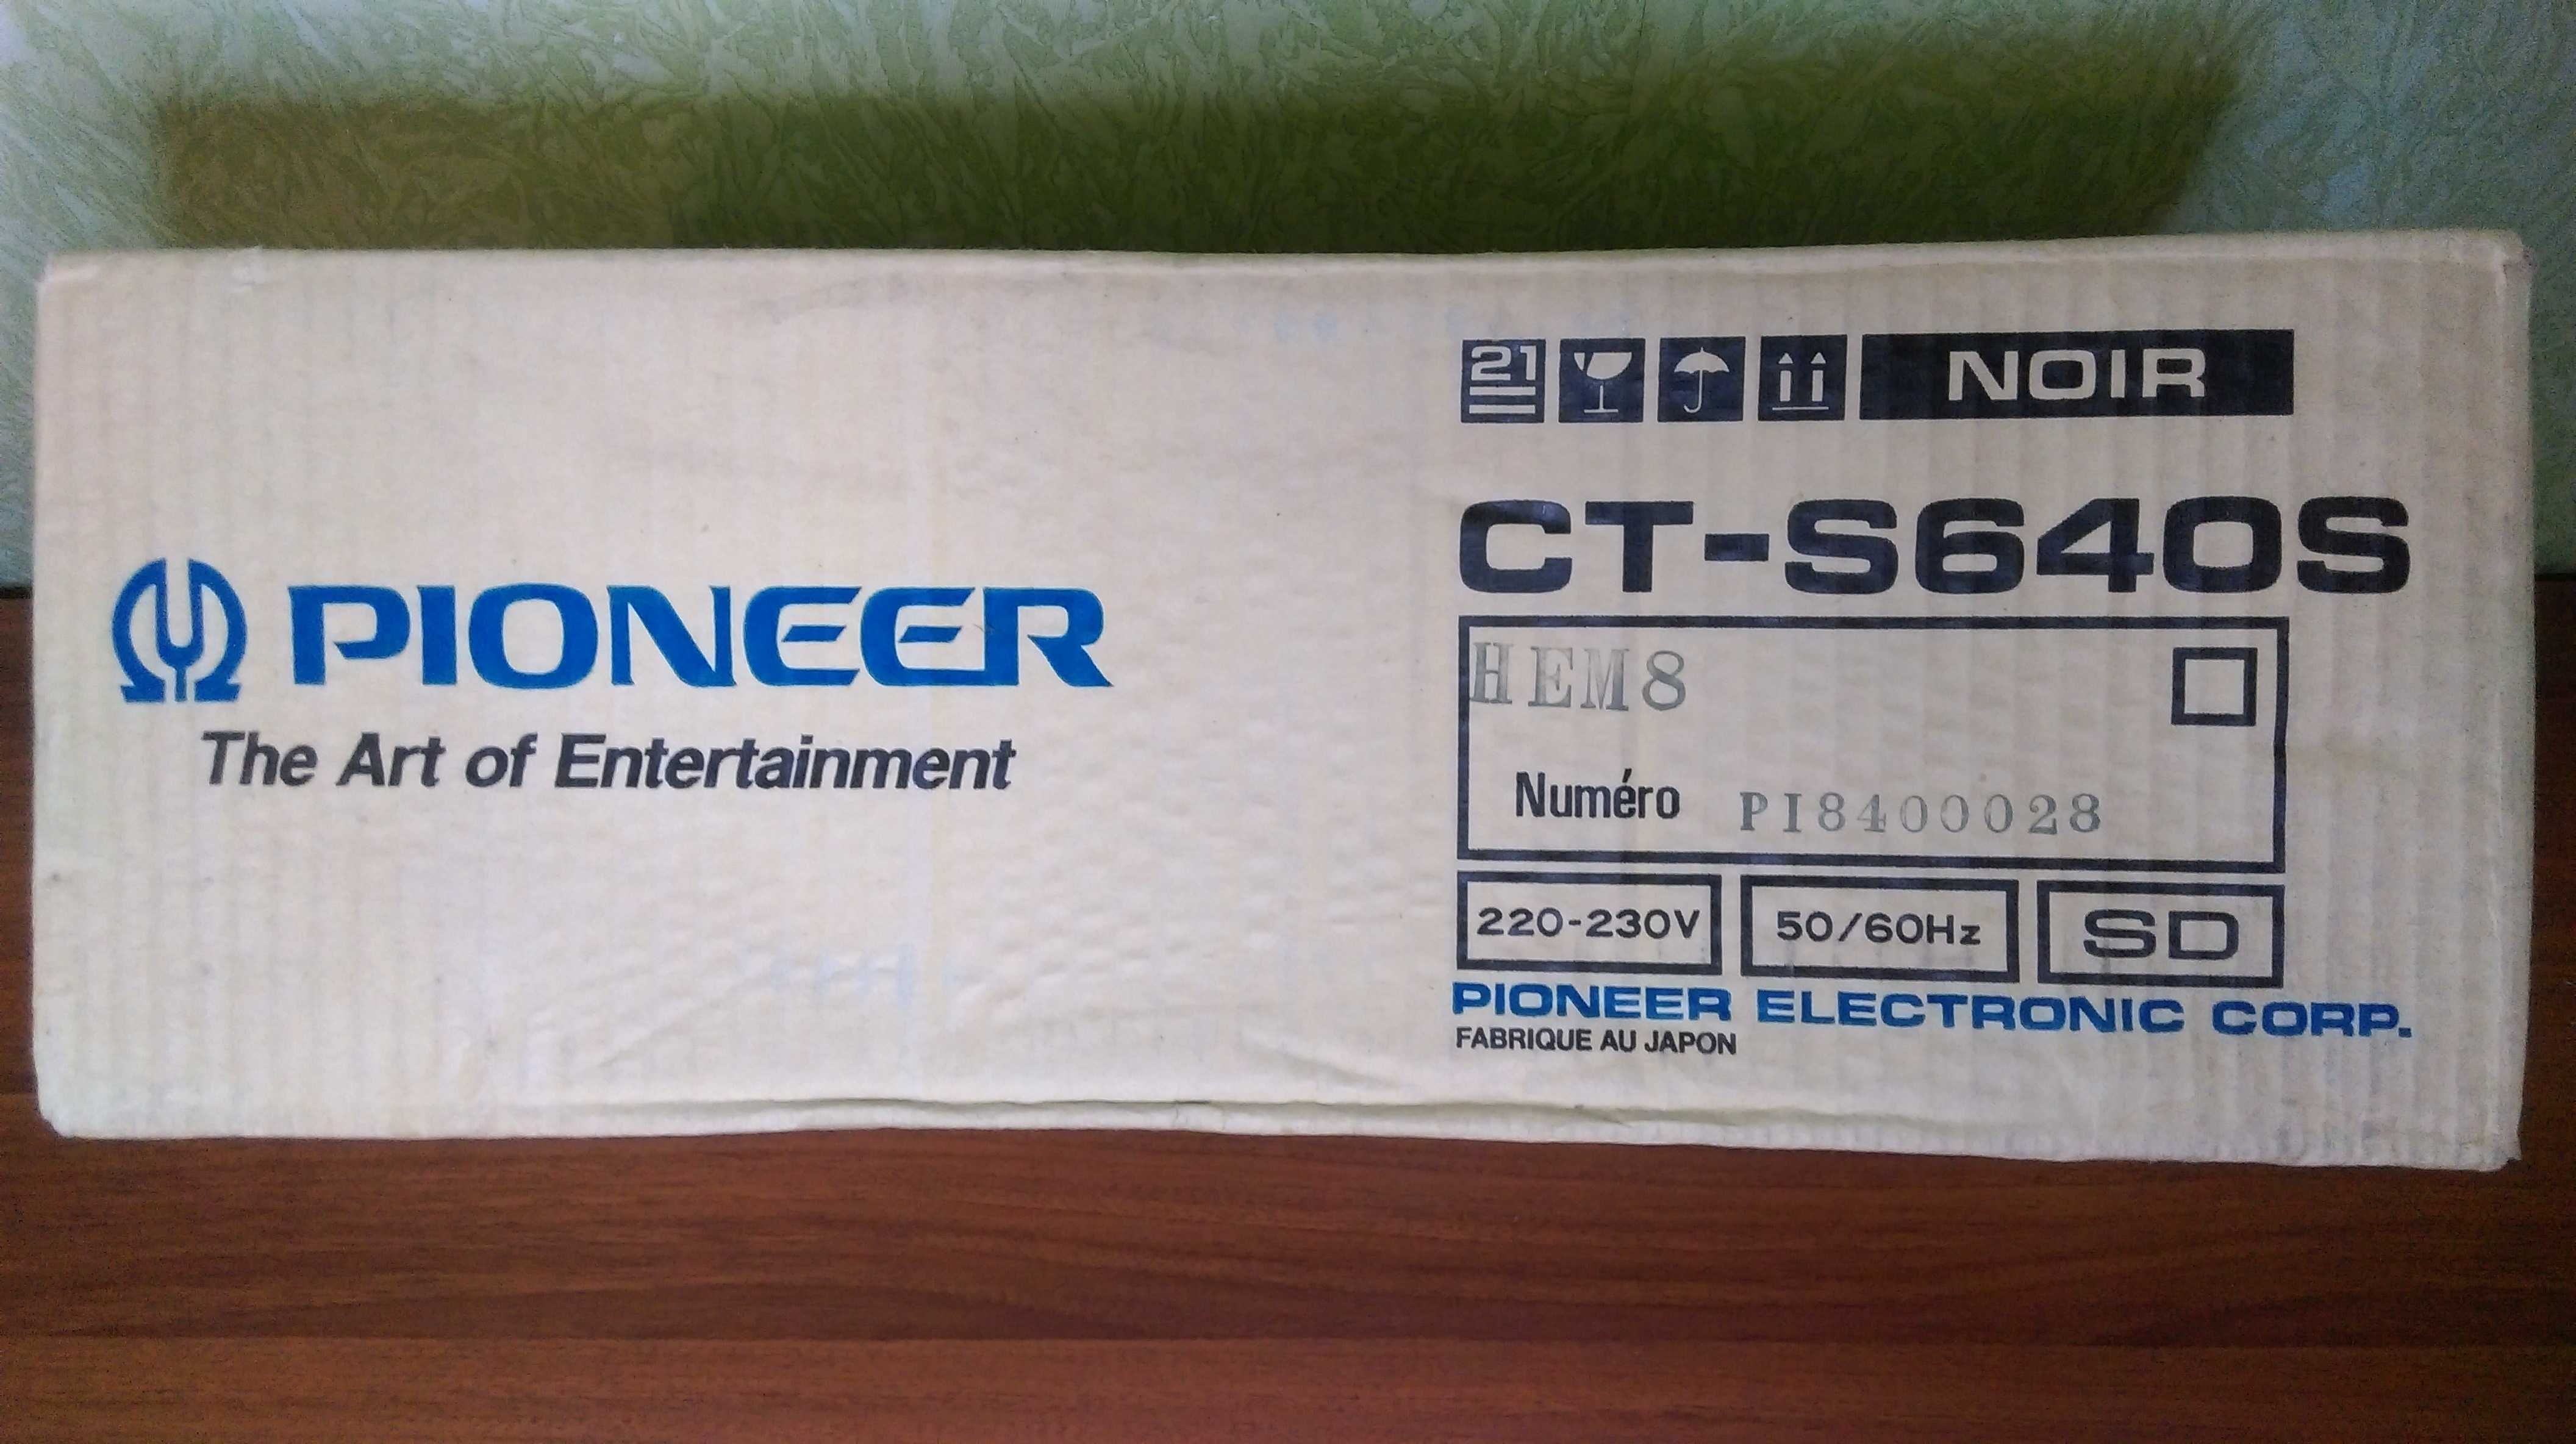 Кассетная дека Pioneer CT- S640S -1995 год (Japan) (новая в упаковке).